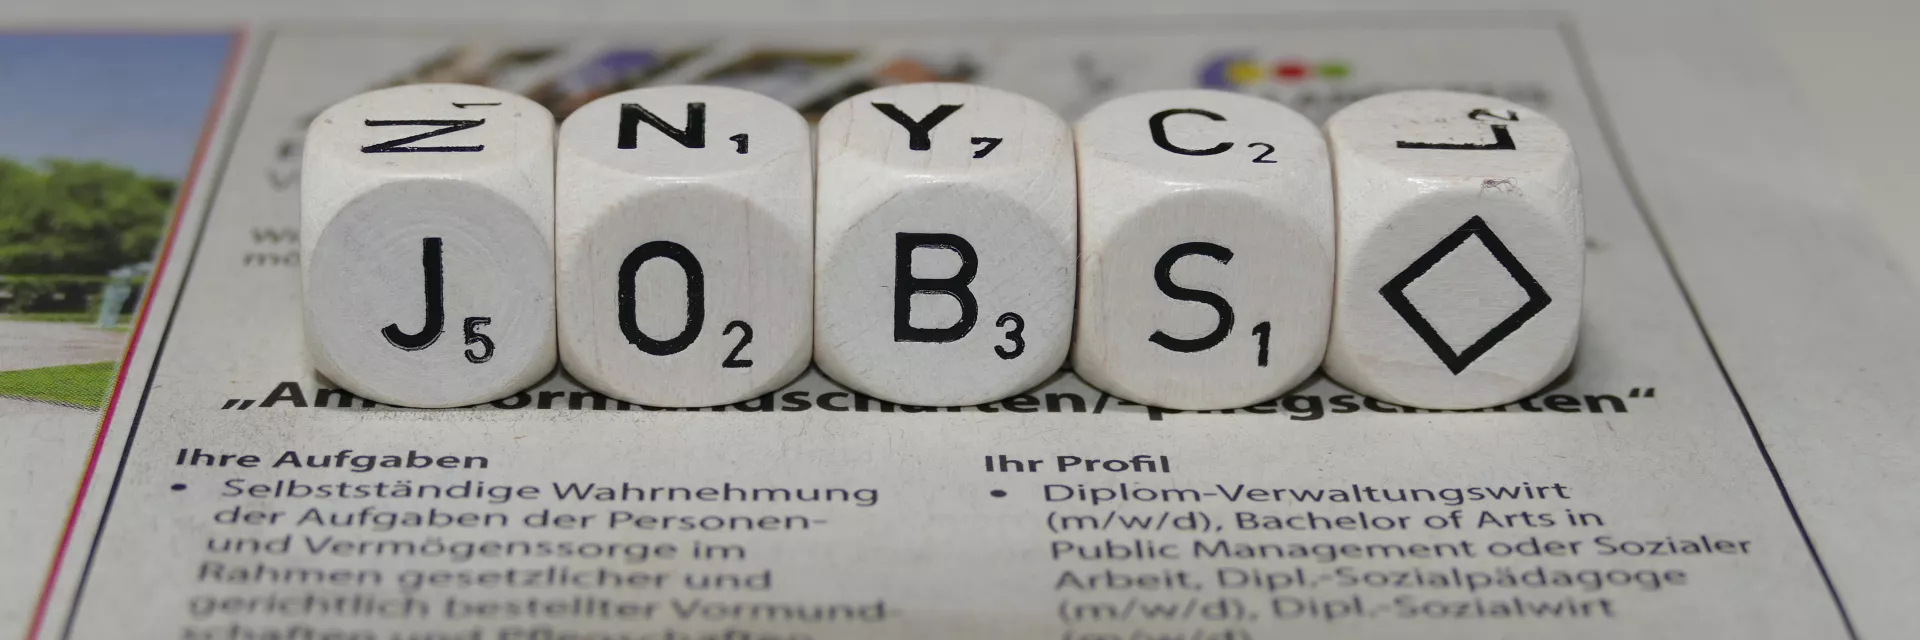 Auf einer Zeitung mit Stellenangeboten liegen Würfel, die mit den Buchstaben "J", "O", "B", und "S" beschriftet sind